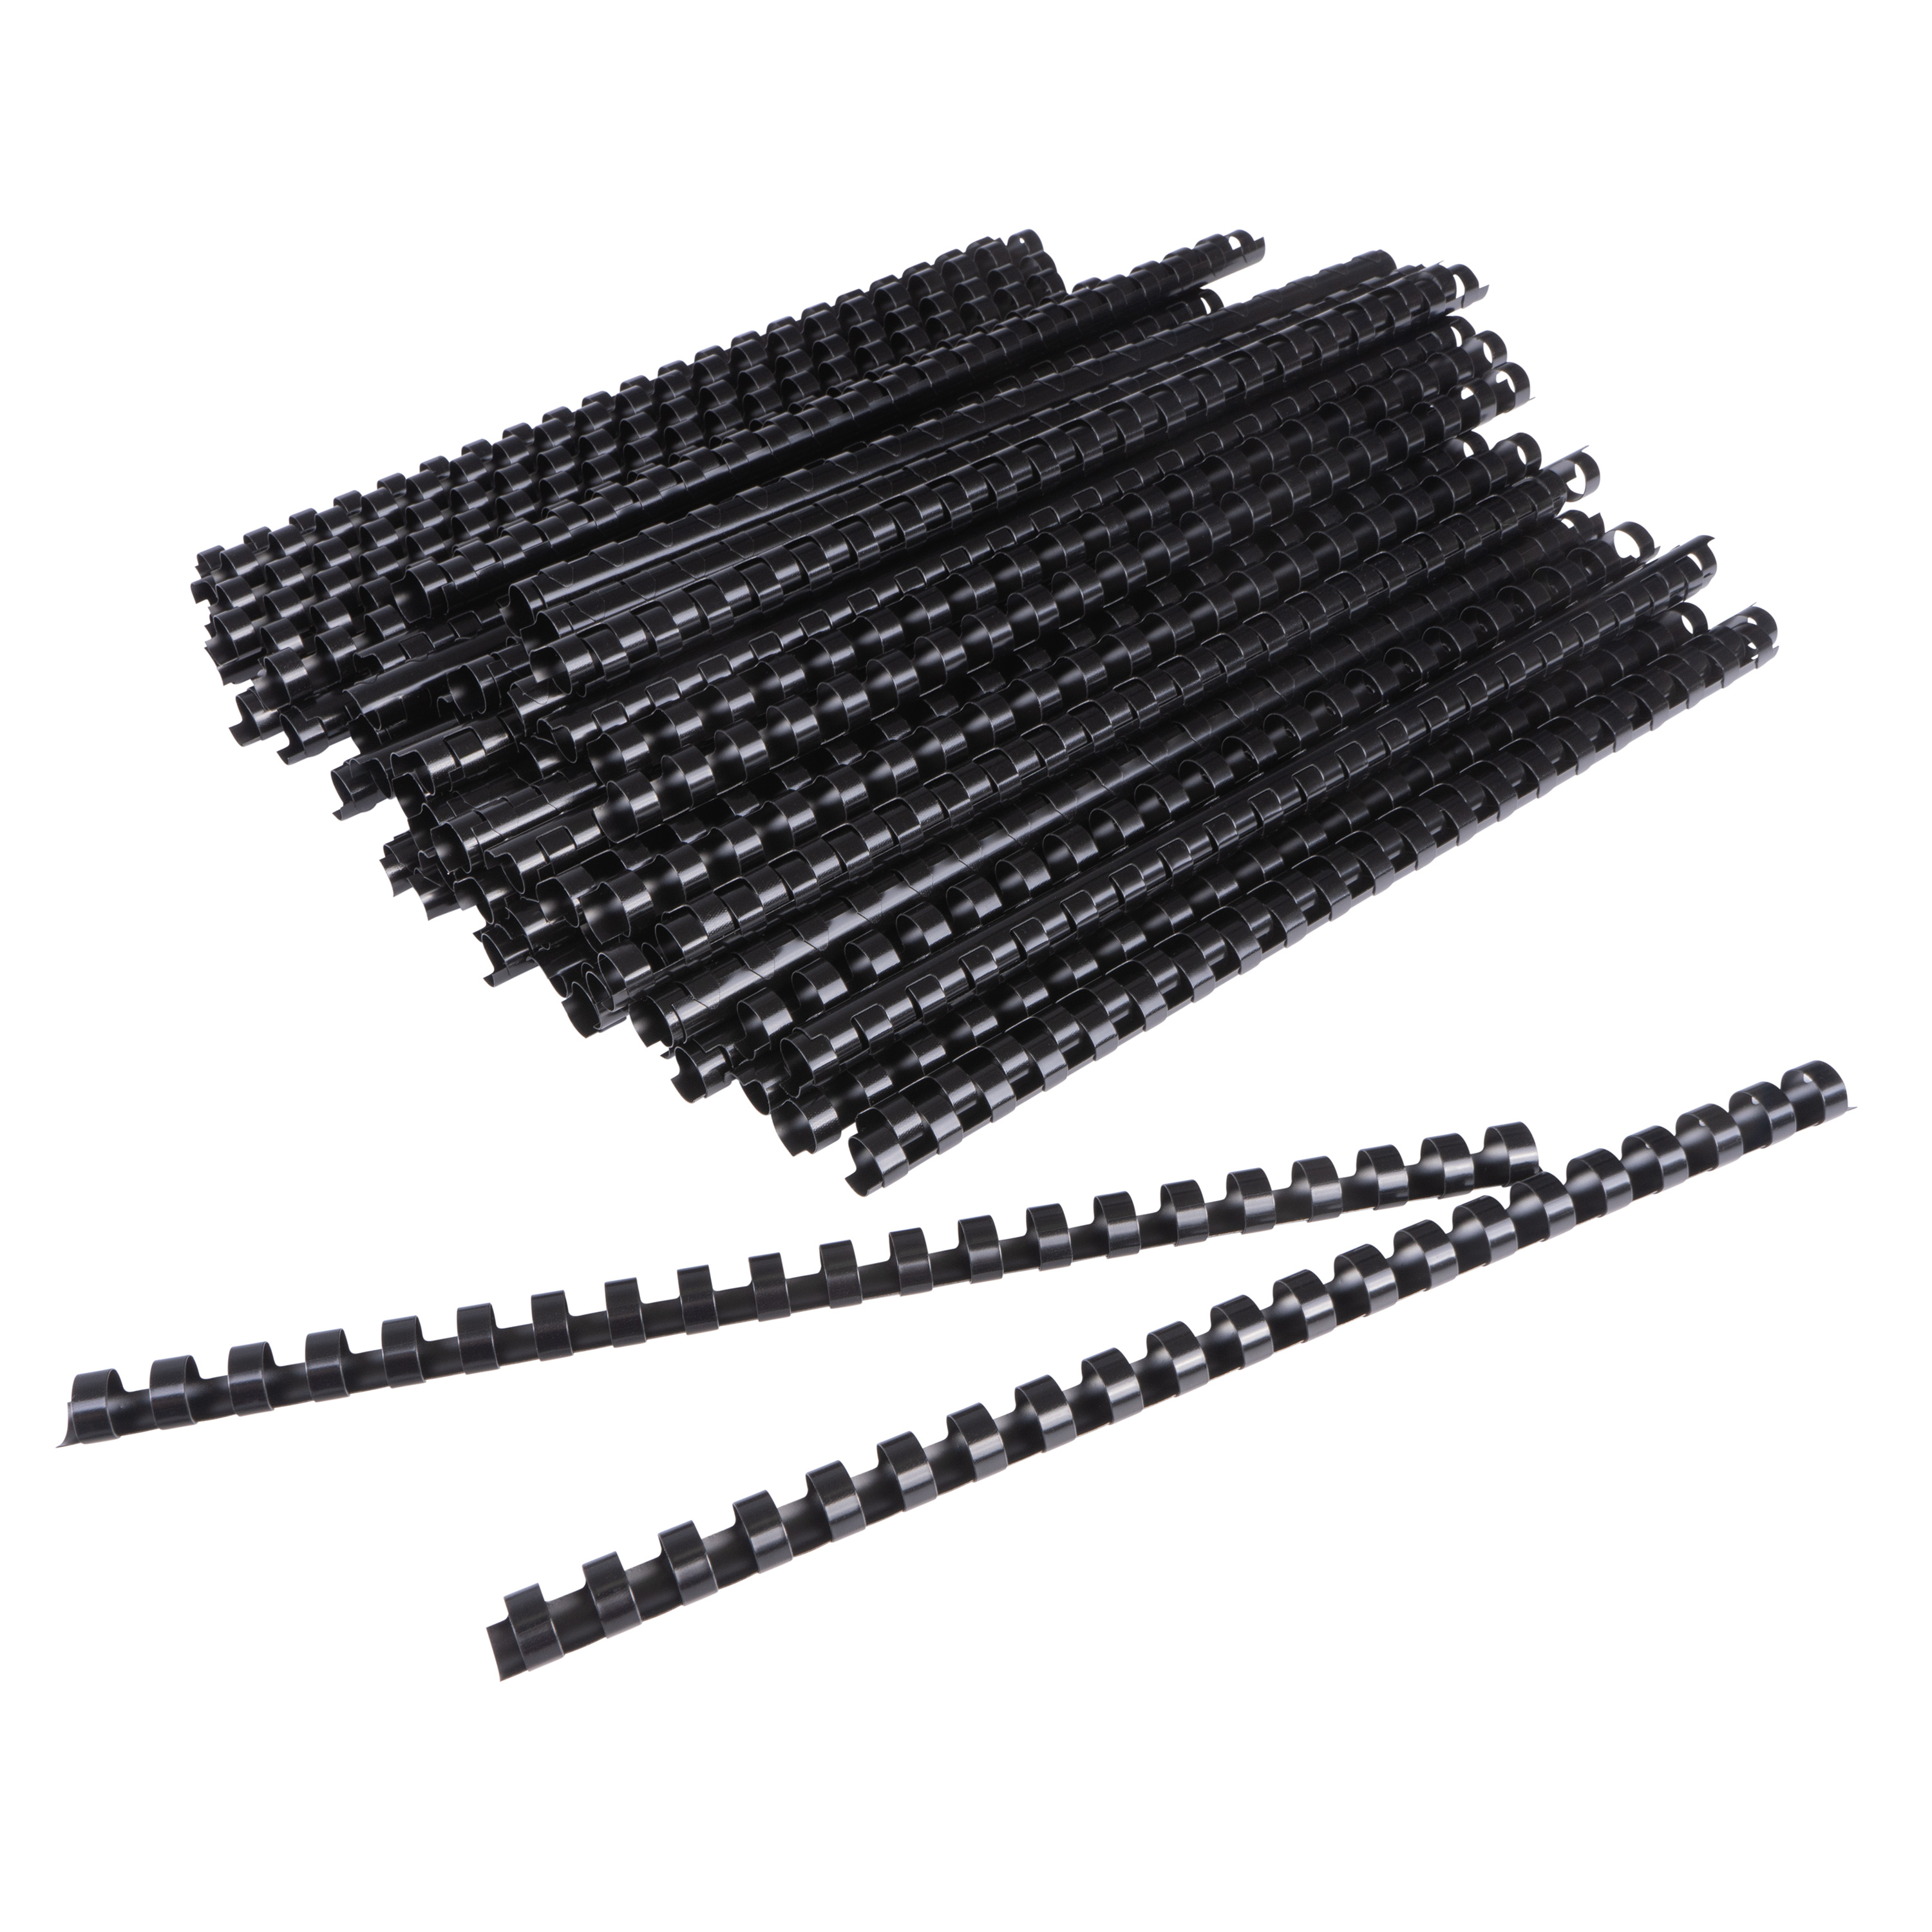 Plastikbinderücken, schwarz, 12 mm für bis zu 90 Blatt